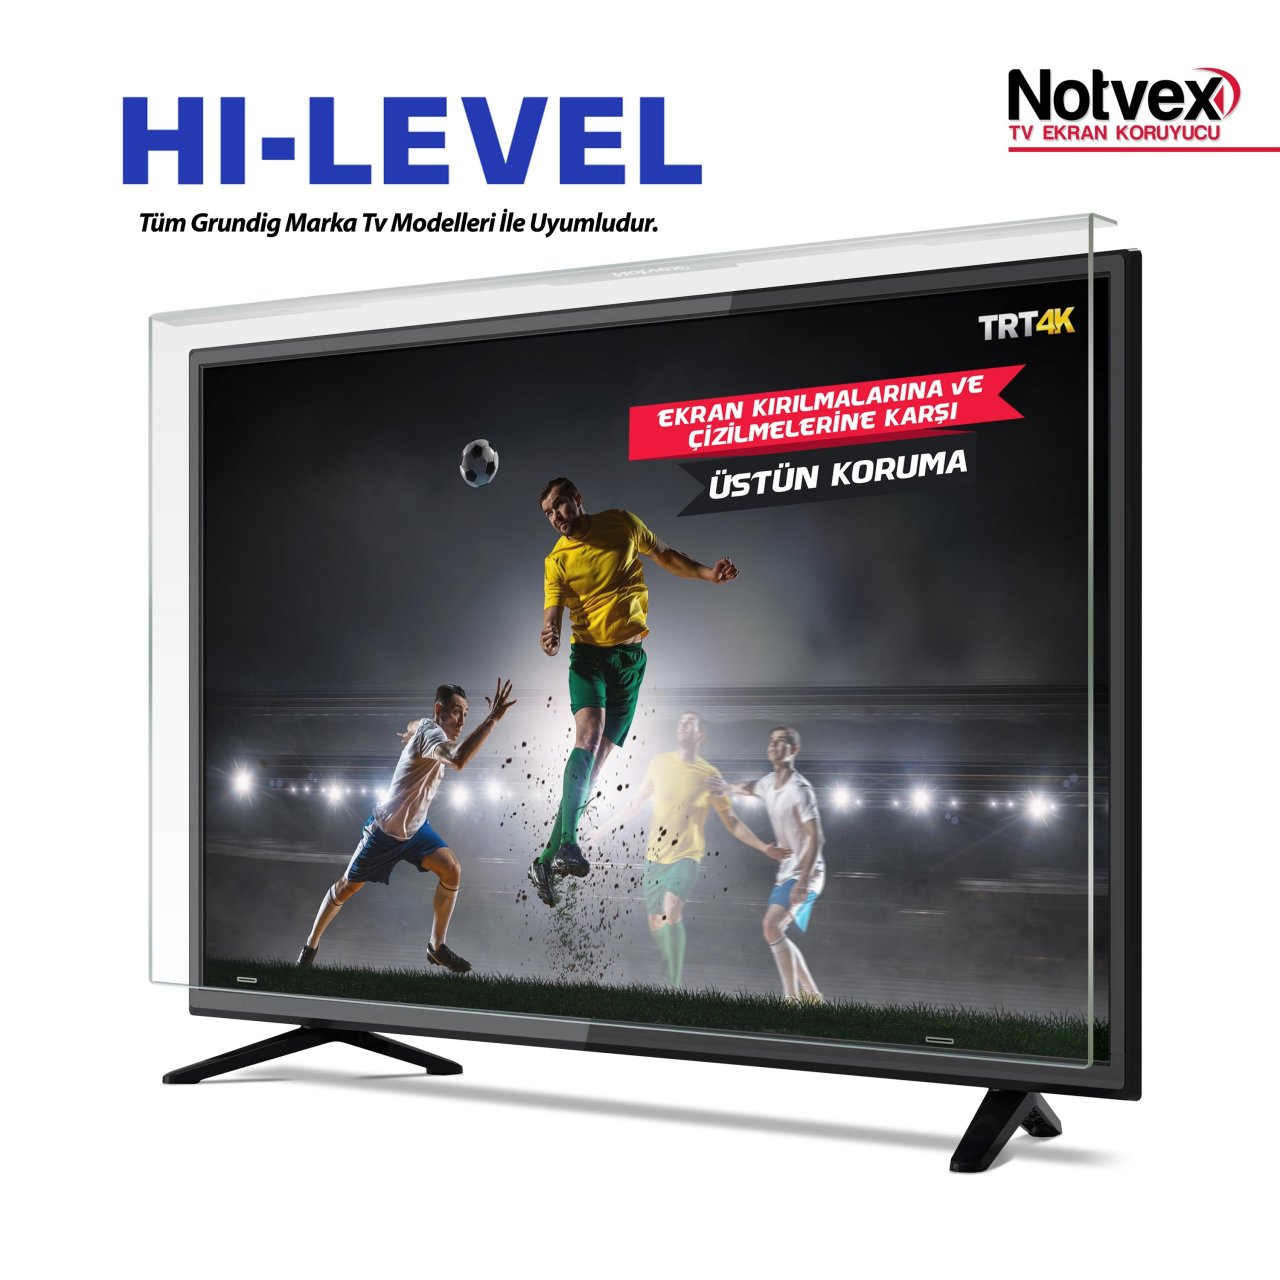 Hi-Level 32HL530 Uyumlu TV Ekran Koruyucu